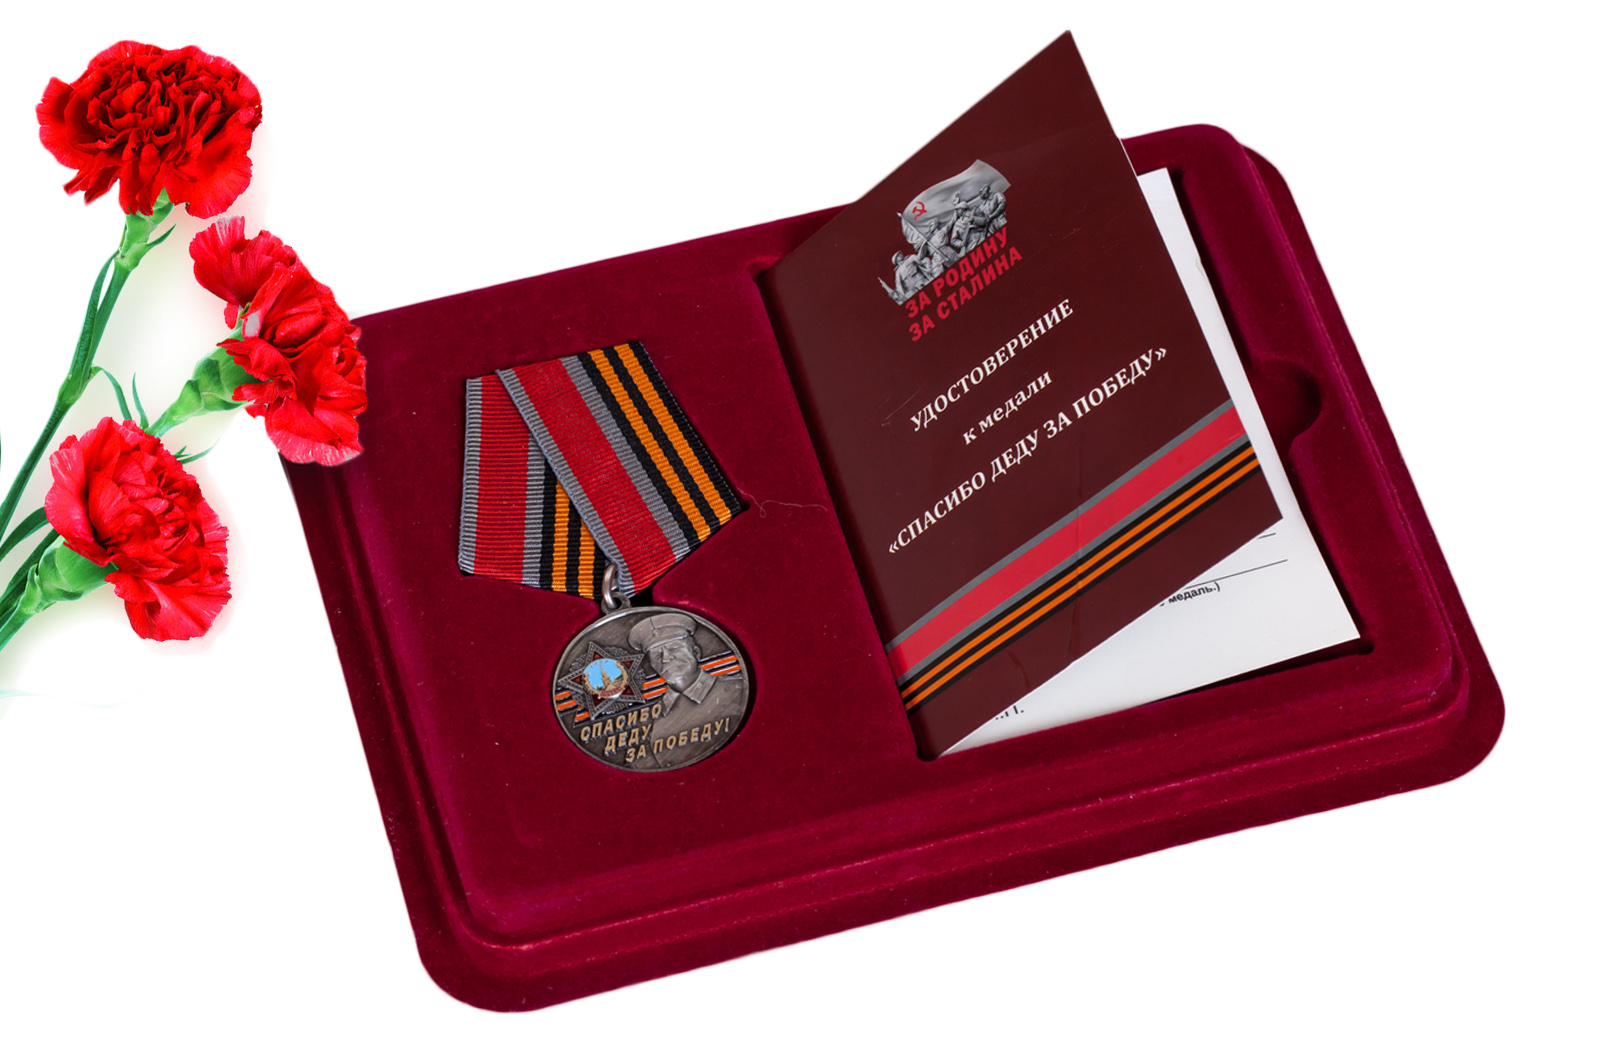 Купить латунную медаль со Сталиным Спасибо деду за Победу! оптом или в розницу